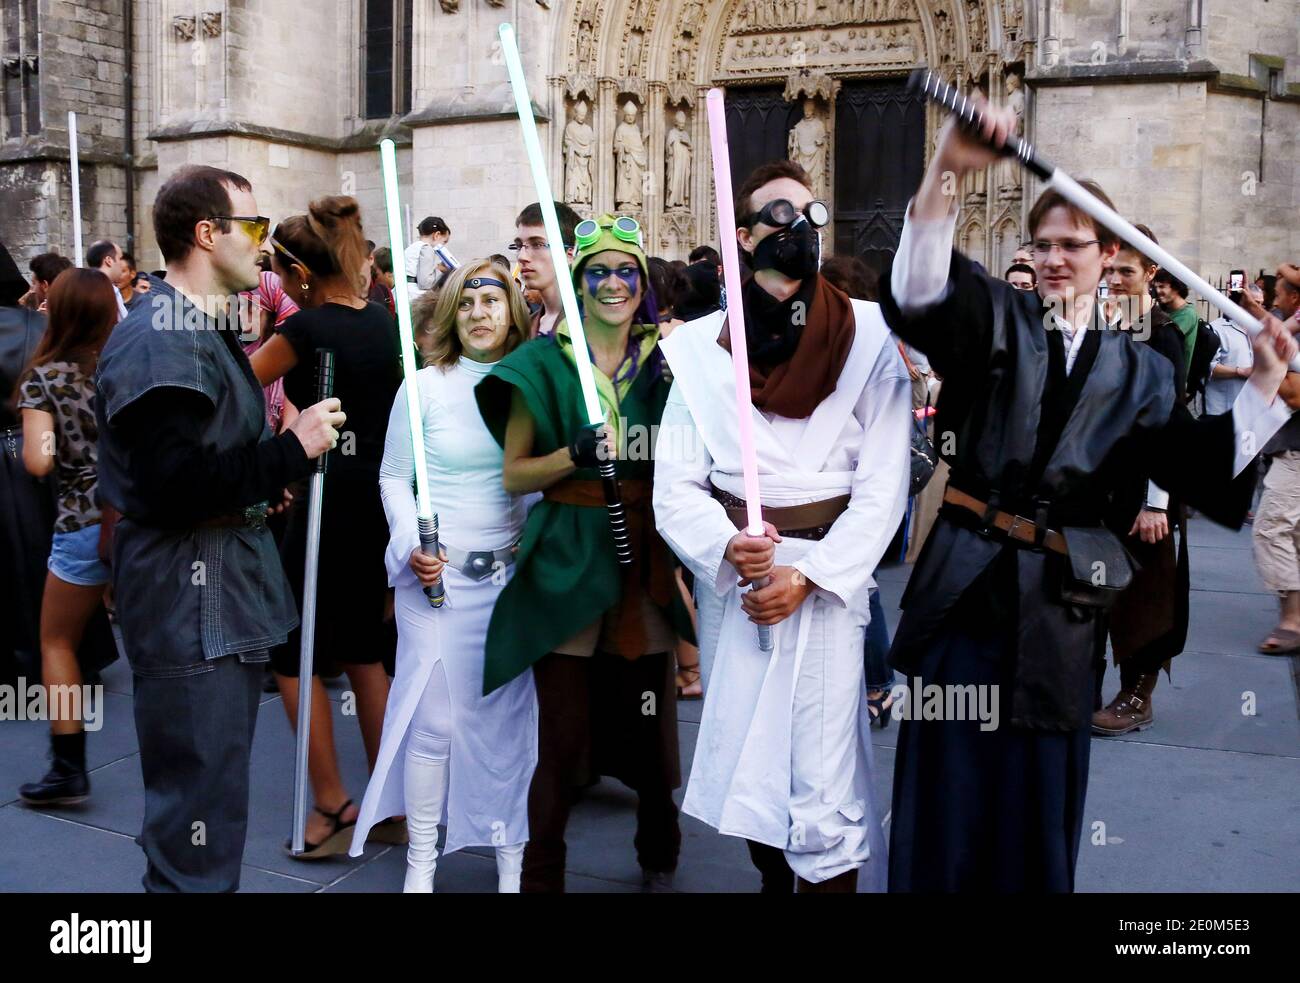 Quasi 50 membri dei fan club di 'Star Wars' hanno organizzato una battaglia in flash mob da trasmettere su internet, ricreando una scena della famosa battaglia del film cult, nel centro della città di Bordeaux, nella Francia sud-occidentale, l'8 settembre 2012. Foto di Patrick Bernard/ABACAPRESS.COM Foto Stock